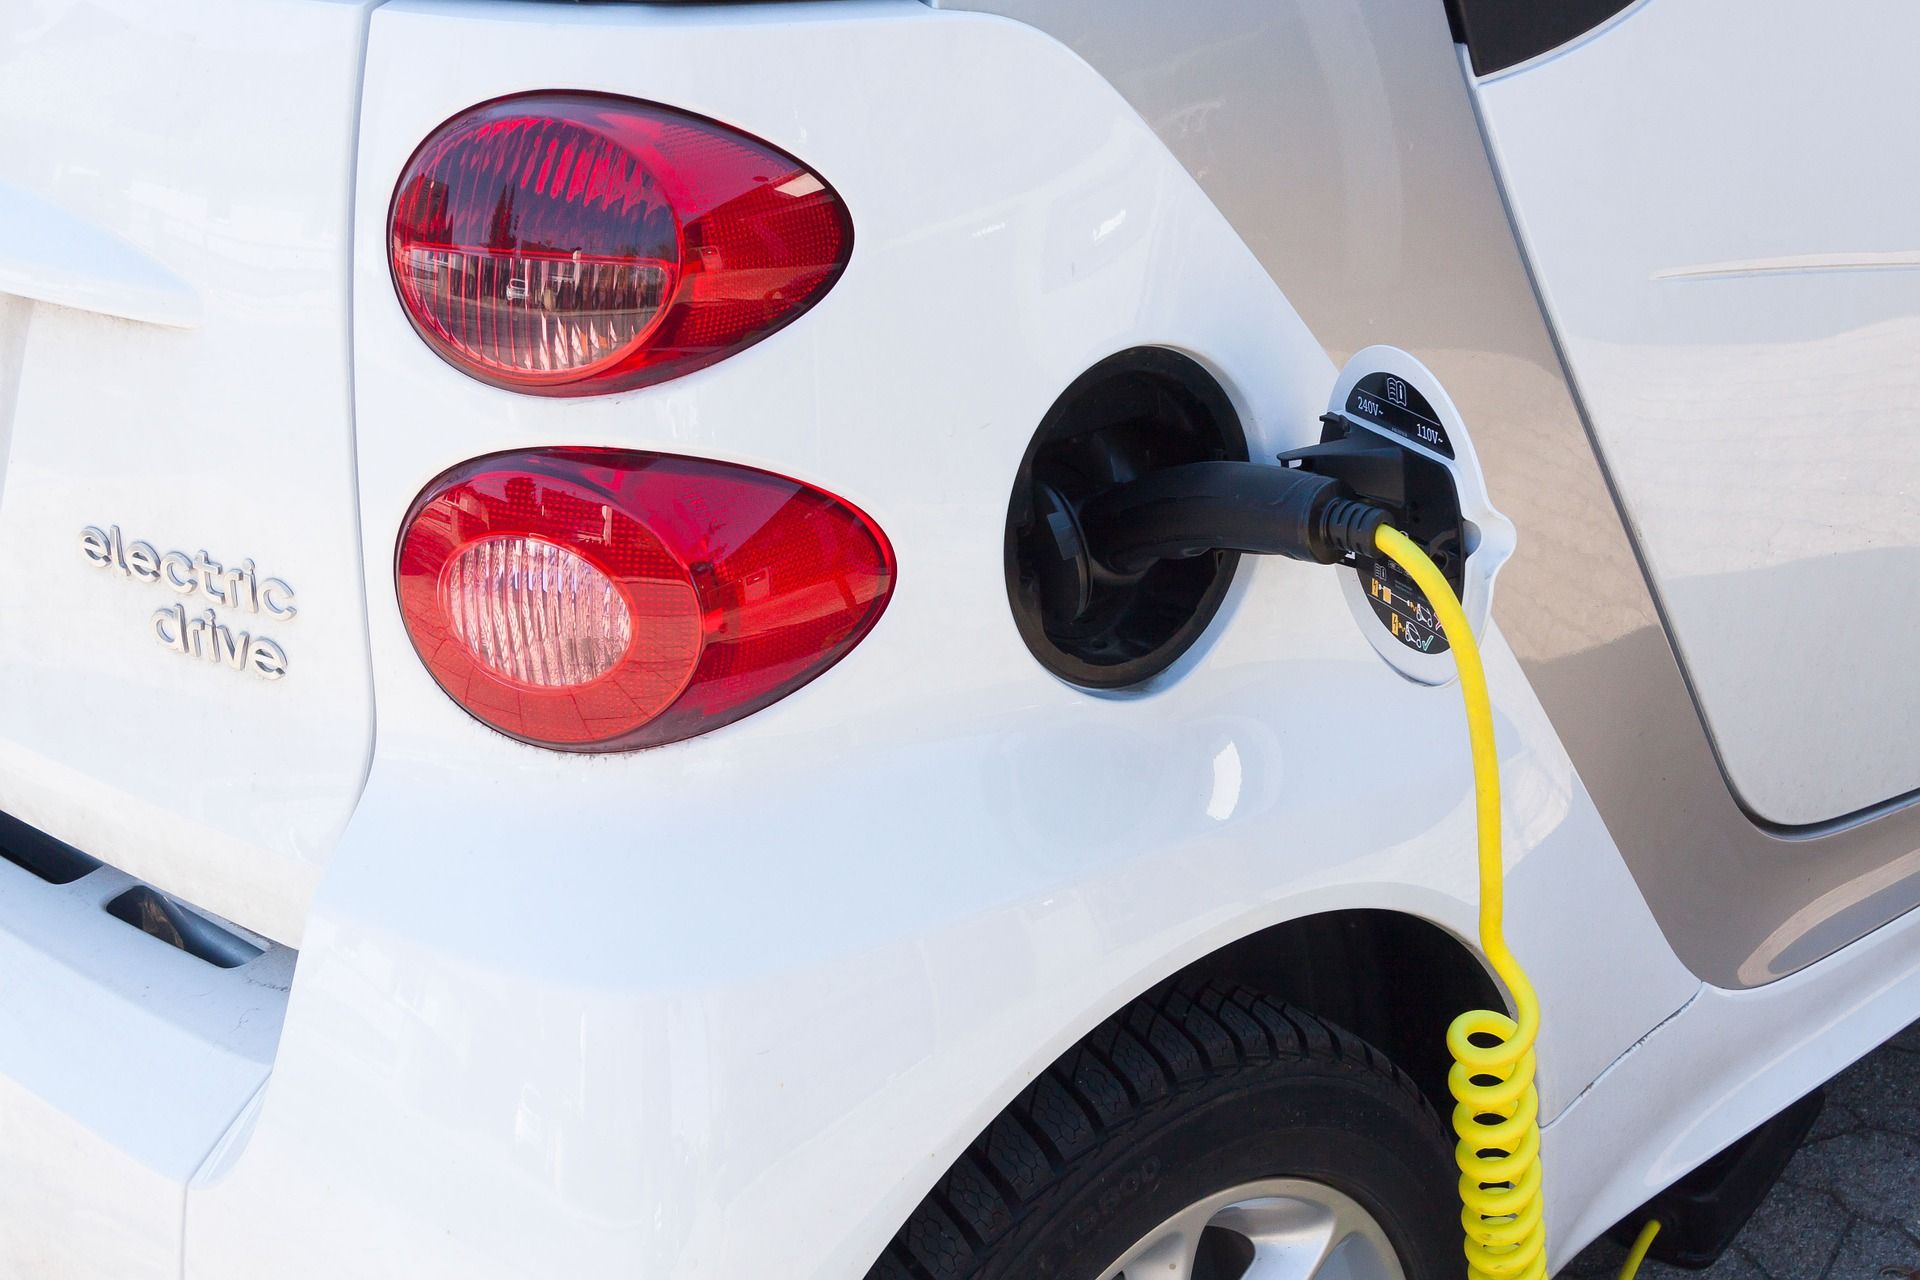  Miejska wypożyczalnia samochodów elektrycznych utknęła w sądzie